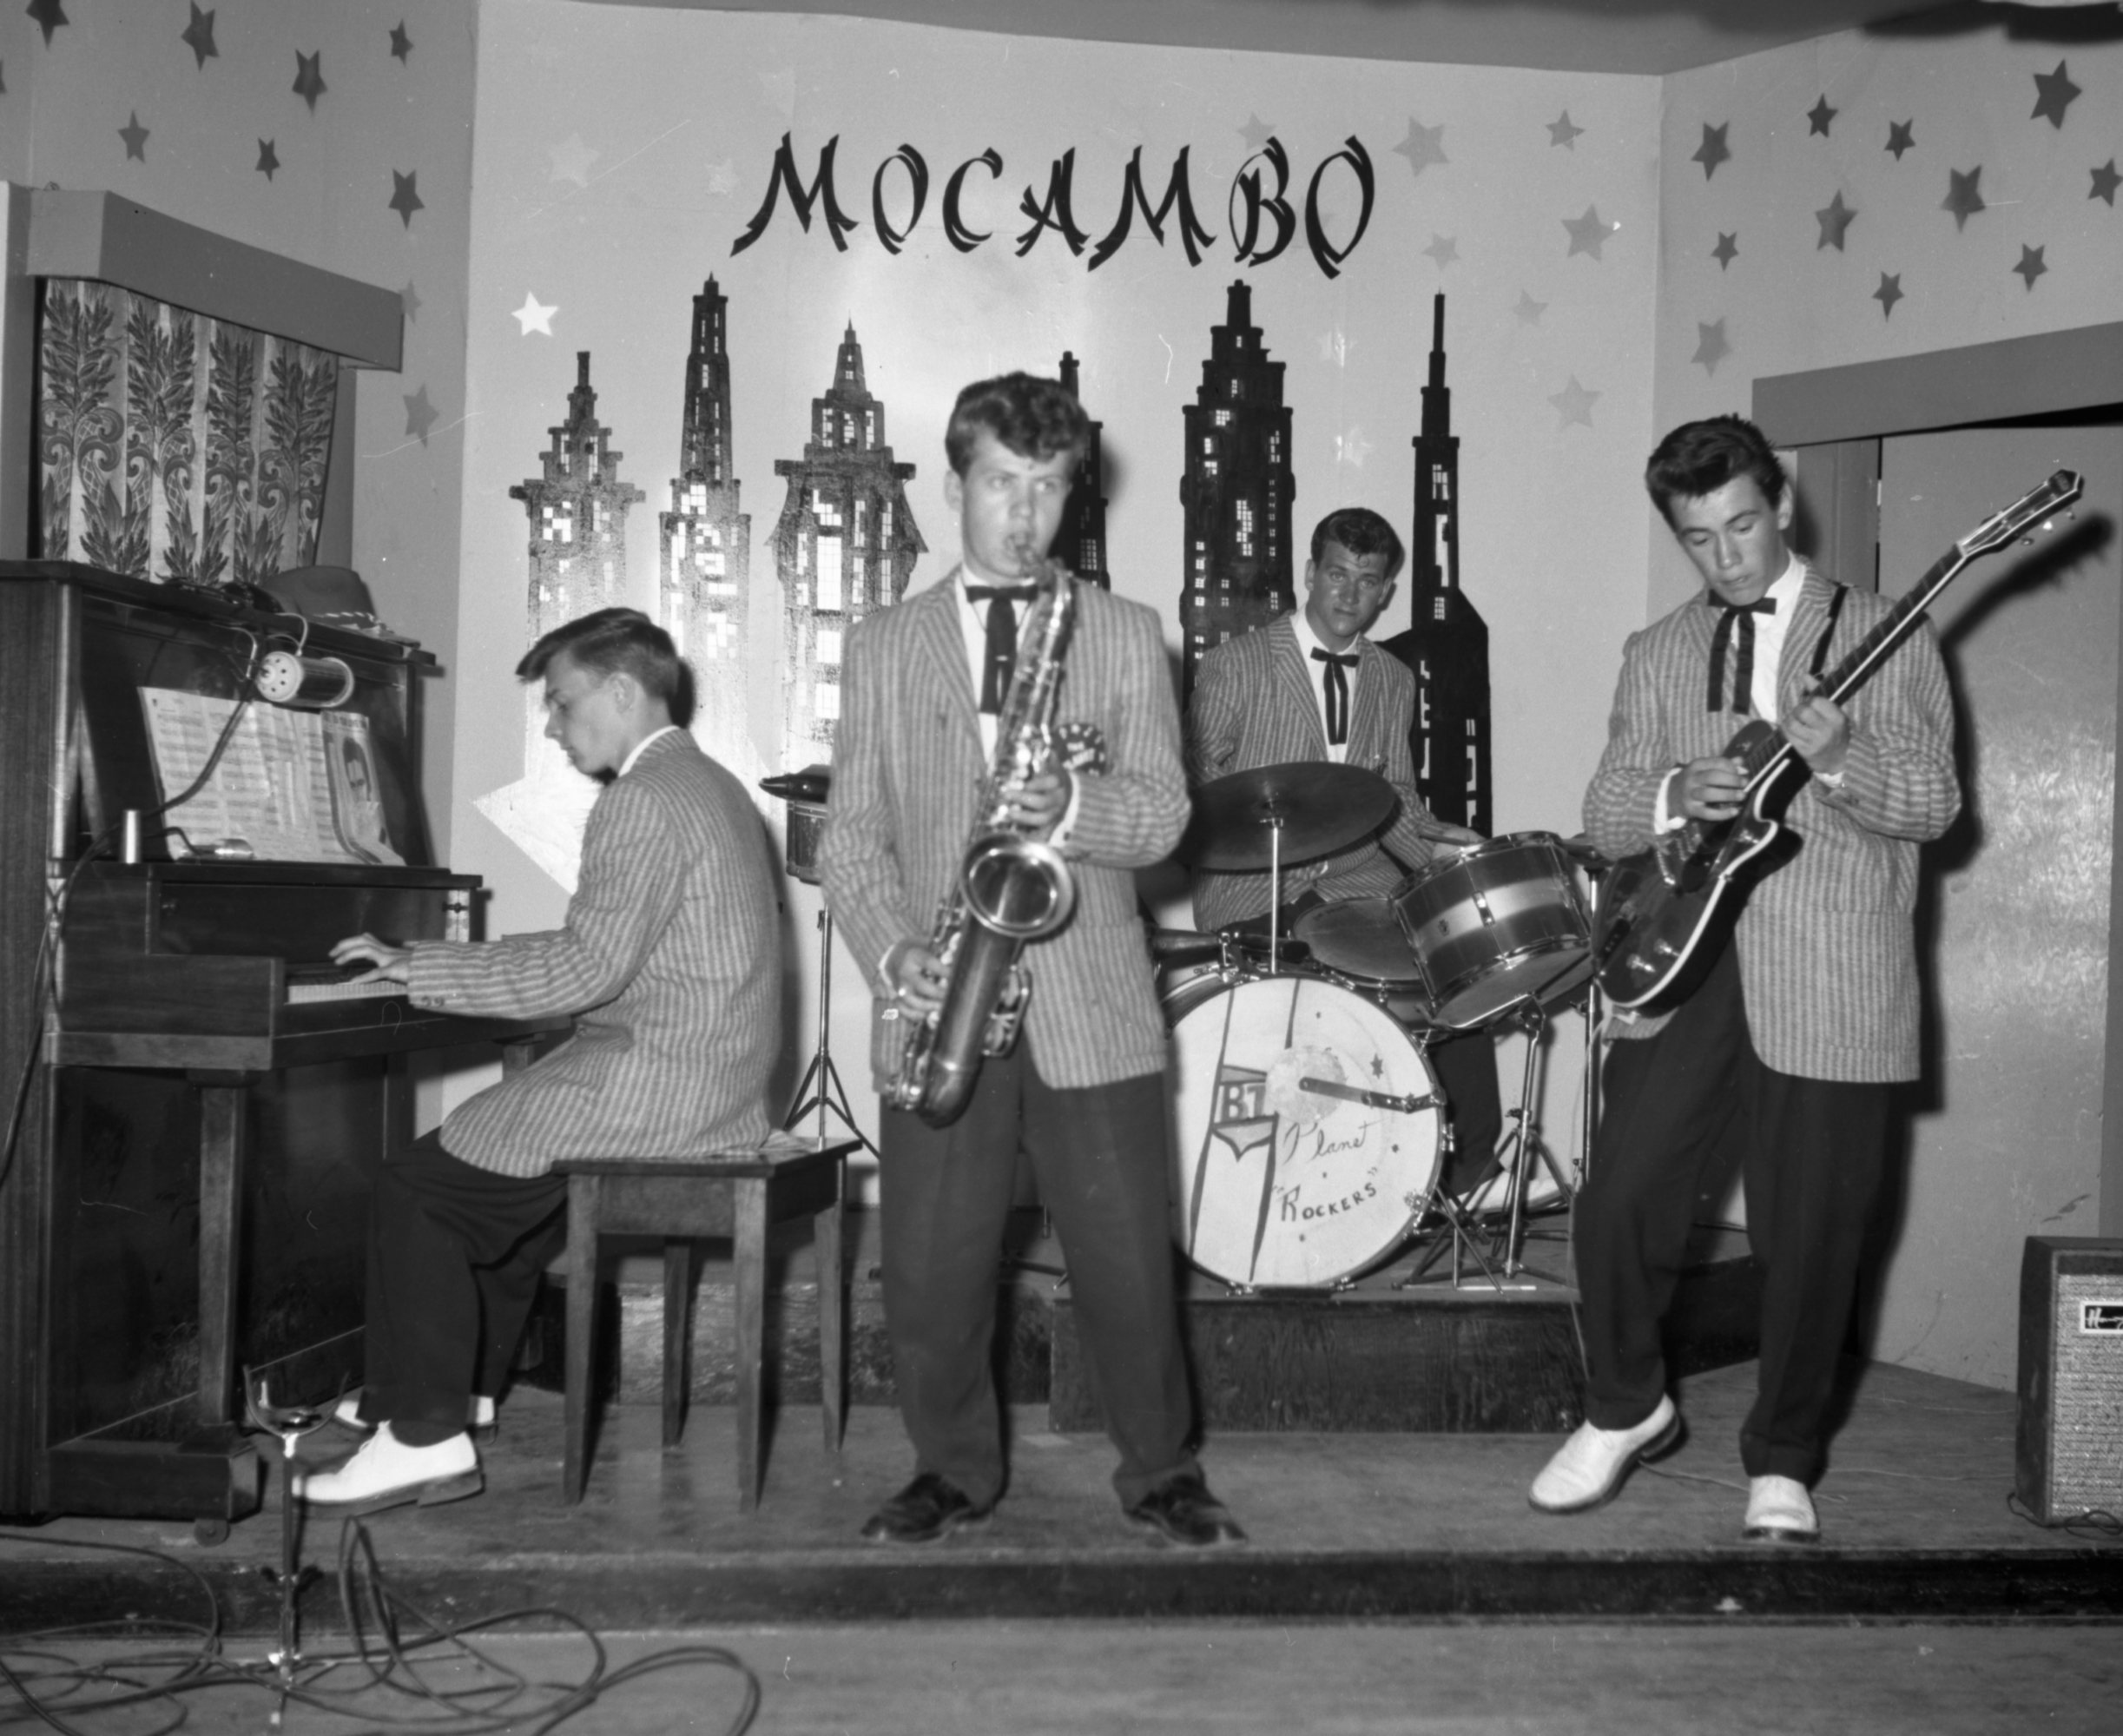 Le groupe musical Les Planet Rockers performe sur la scène du club Mocambo, 1959